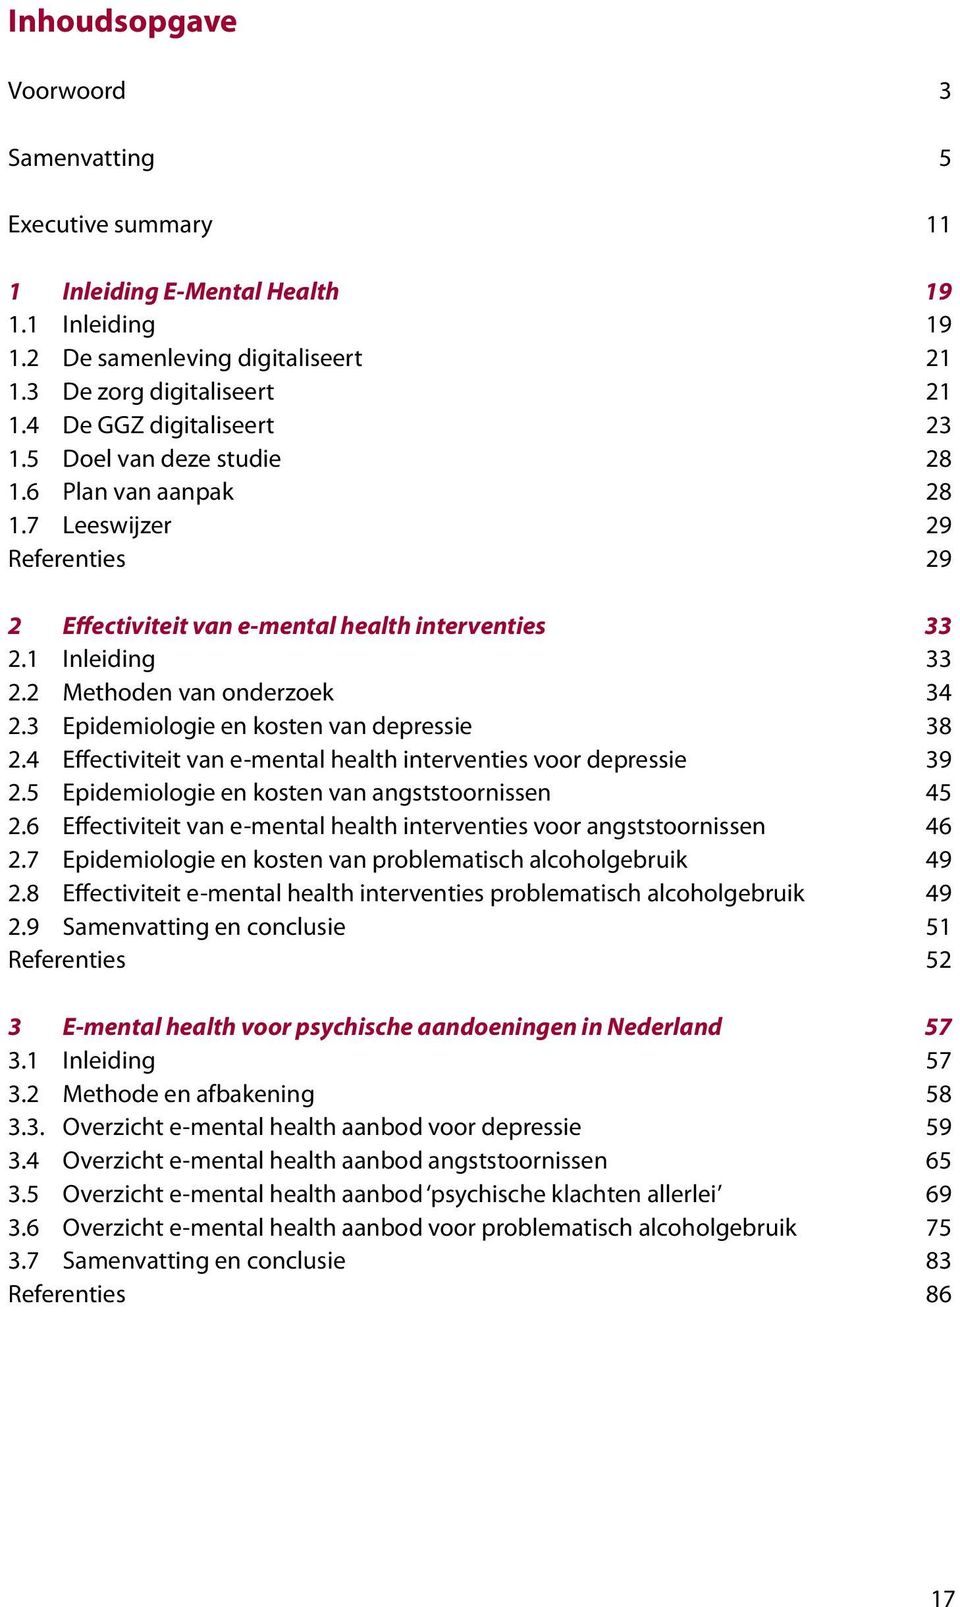 2 Methoden van onderzoek 34 2.3 Epidemiologie en kosten van depressie 38 2.4 Effectiviteit van e-mental health interventies voor depressie 39 2.5 Epidemiologie en kosten van angststoornissen 5 2.